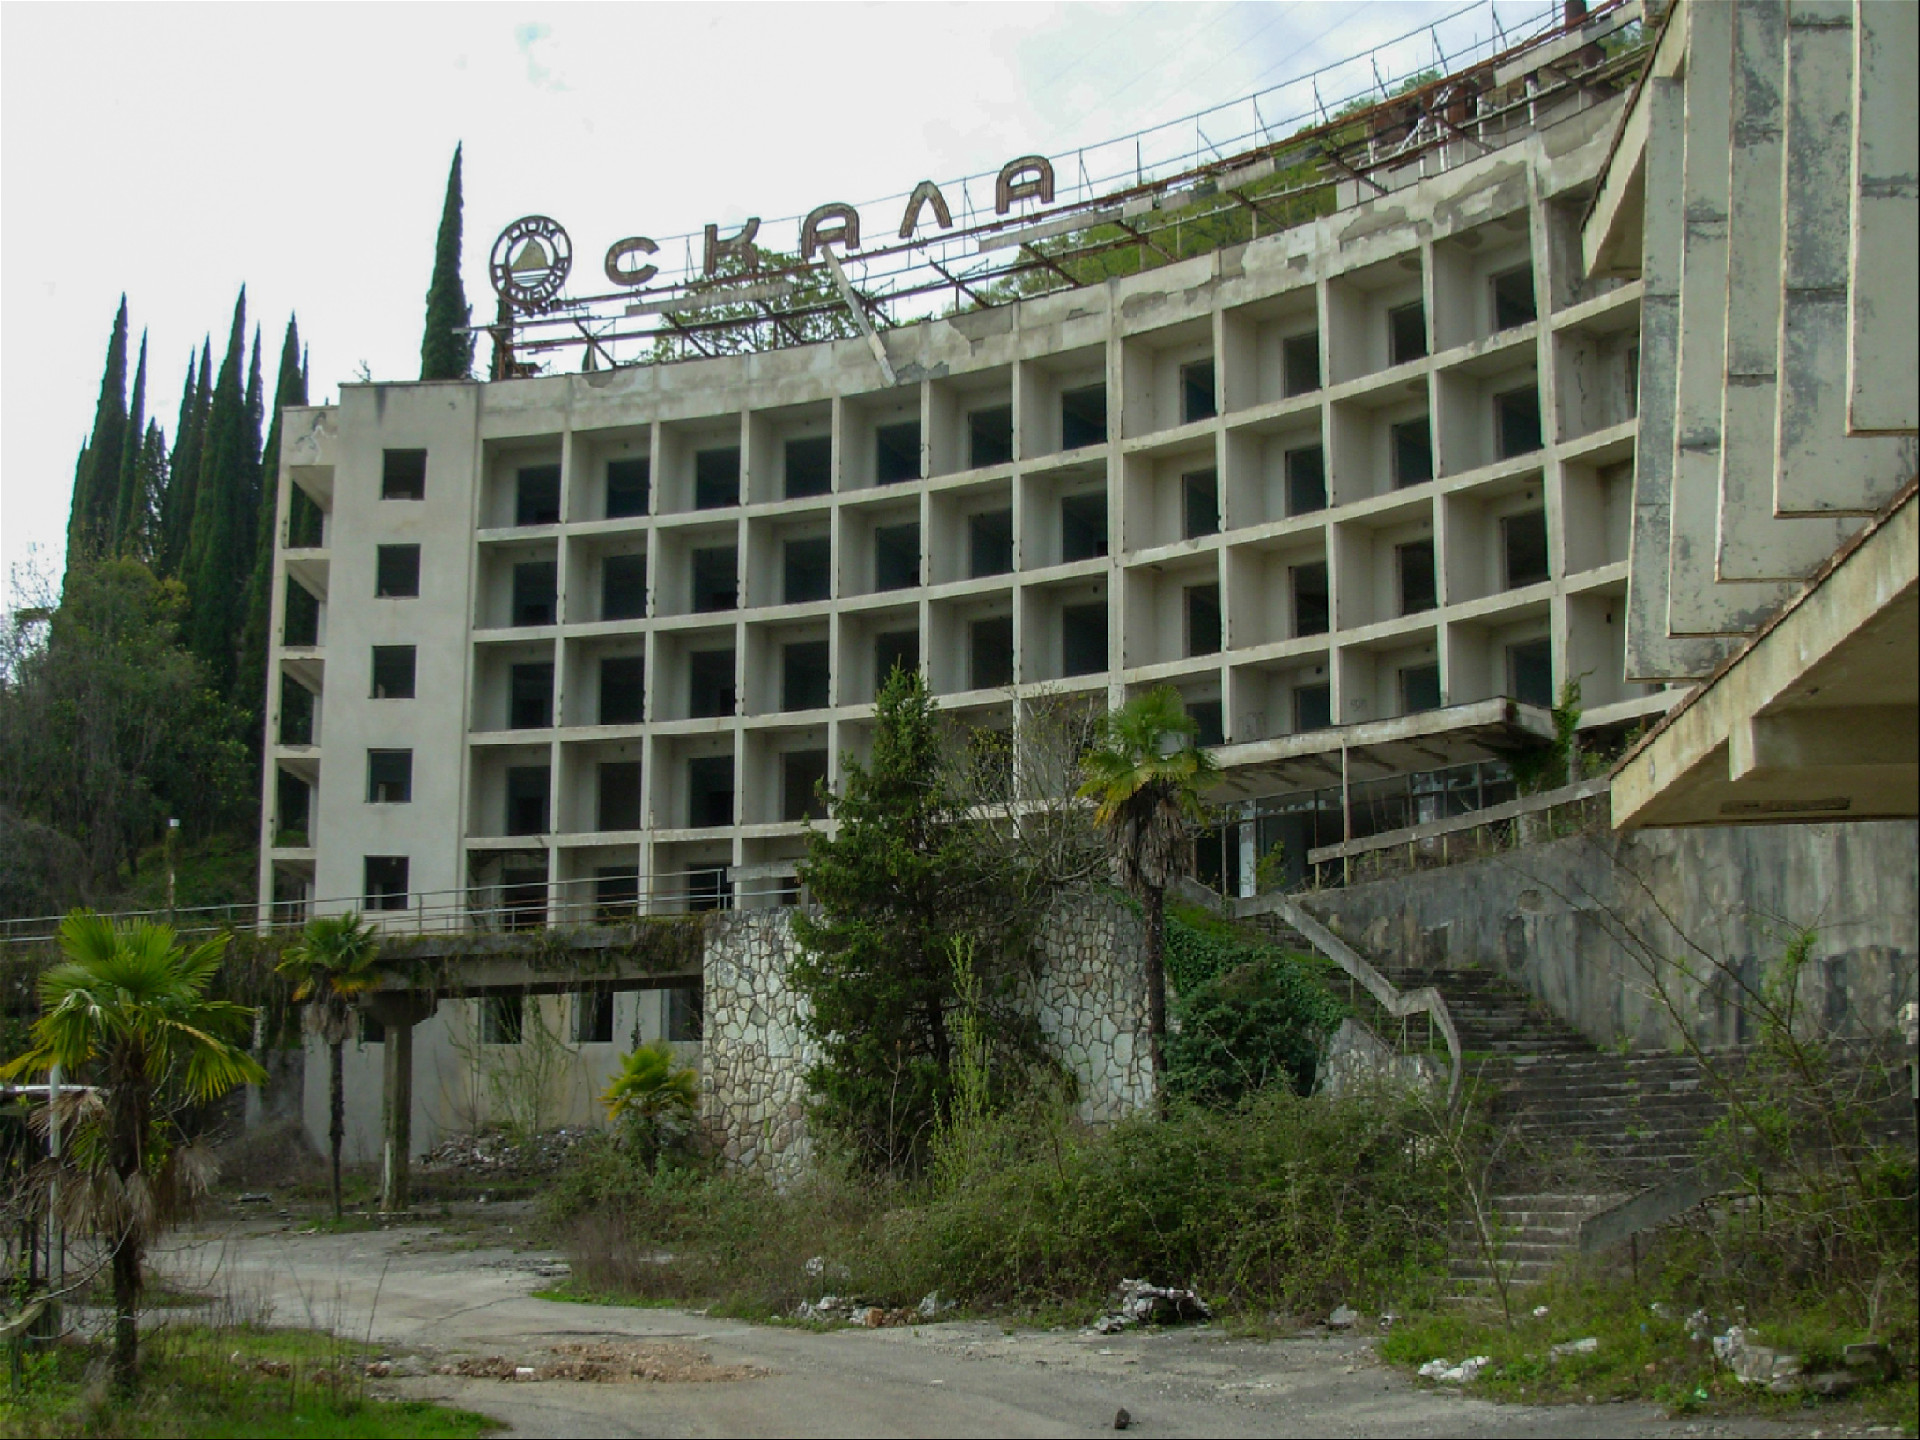 Вид на здание пансионата Скала в 2009 году